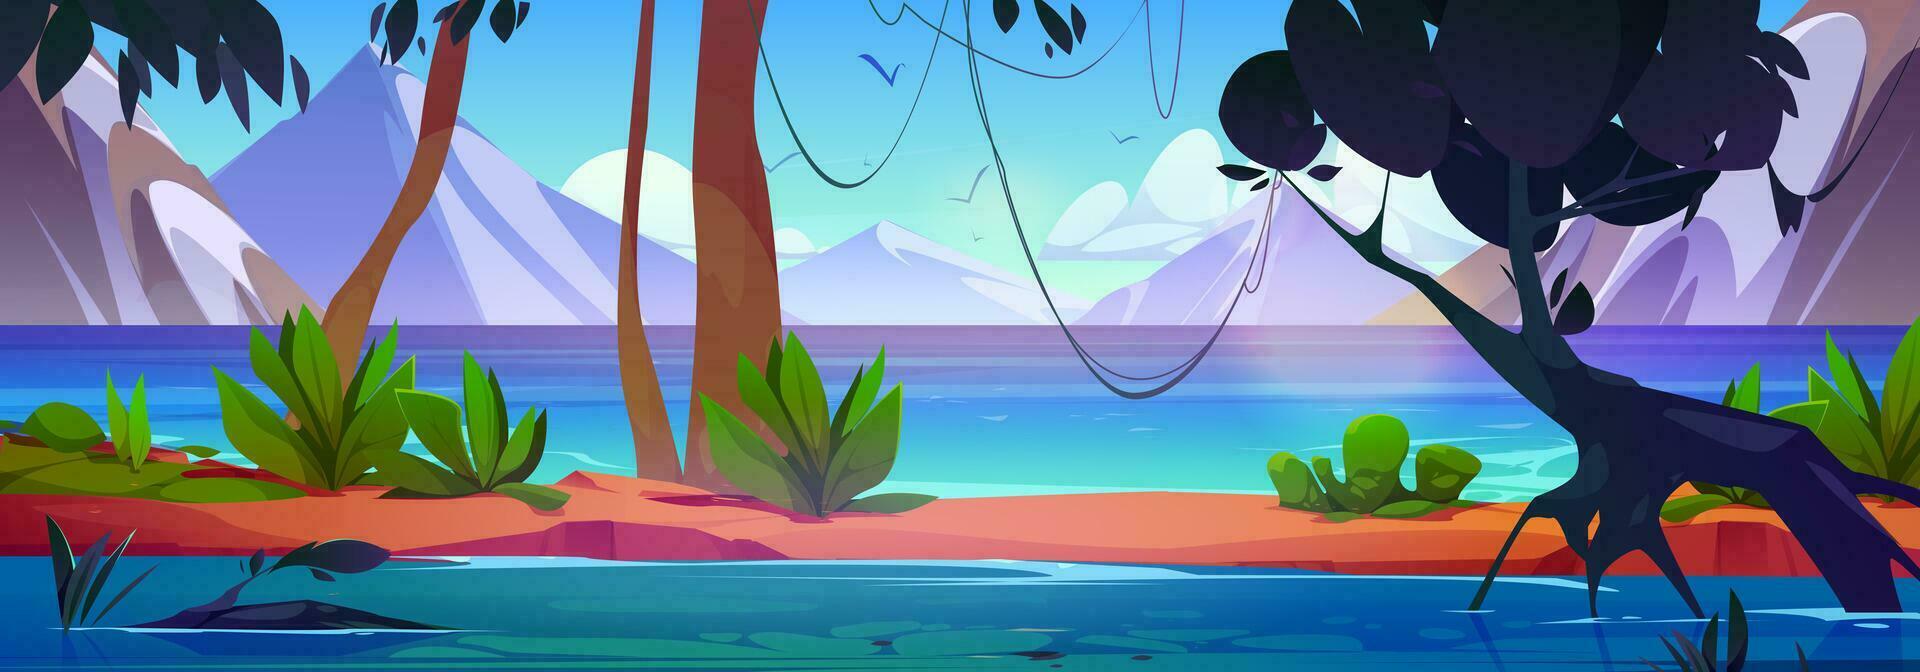 dibujos animados montaña paisaje con lago, selva vector